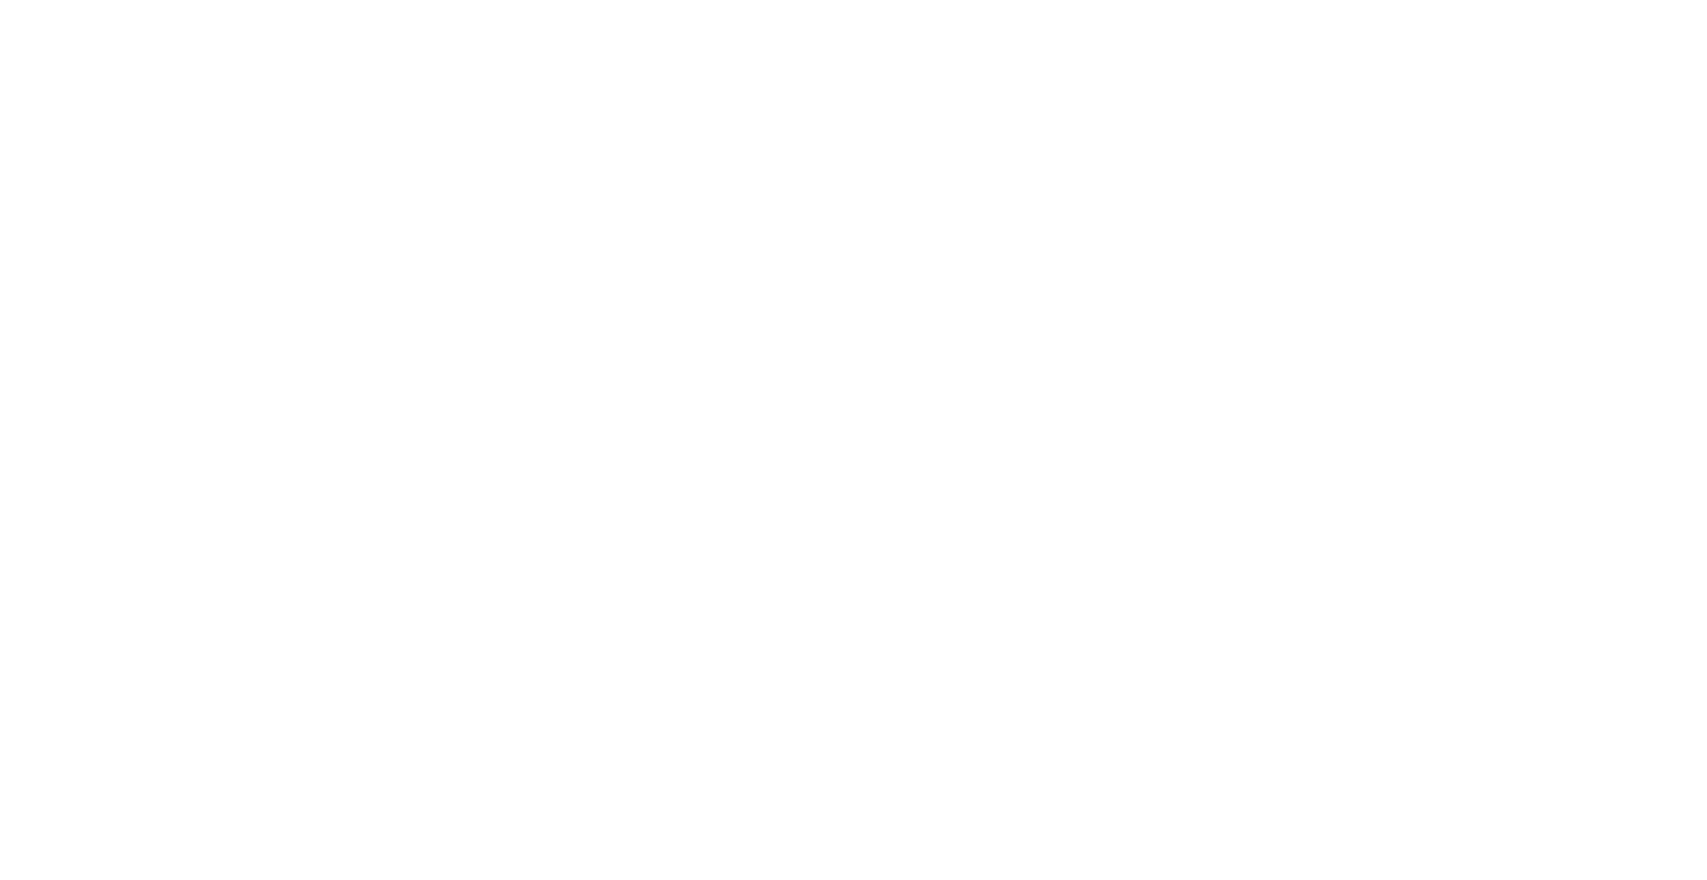 Hocus Pocus logo